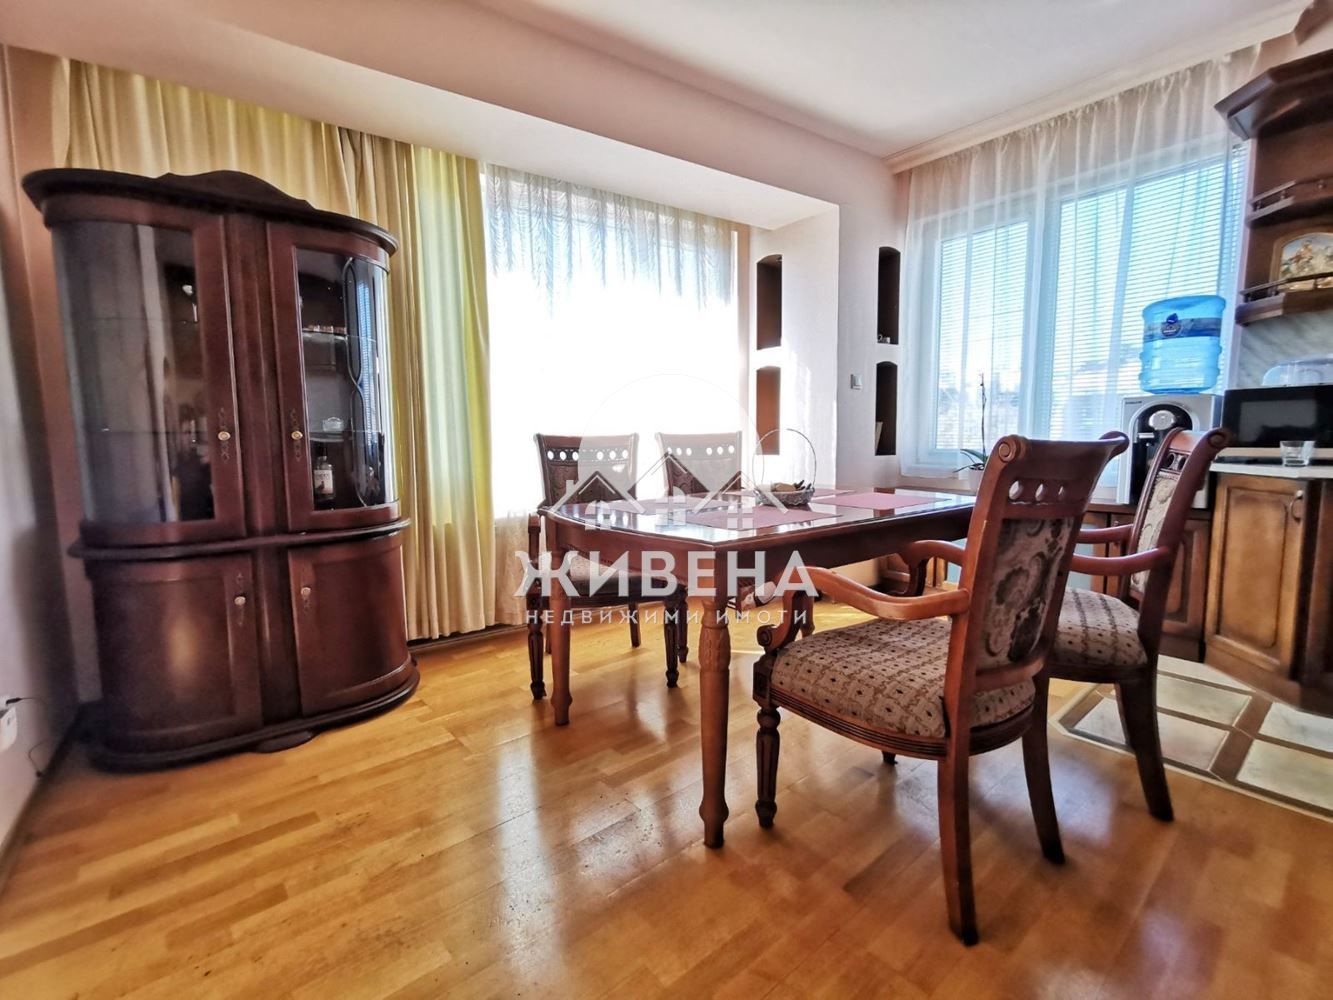 3-стаен апартамент за продажба, в Гръцка махала, площ 106 кв.м